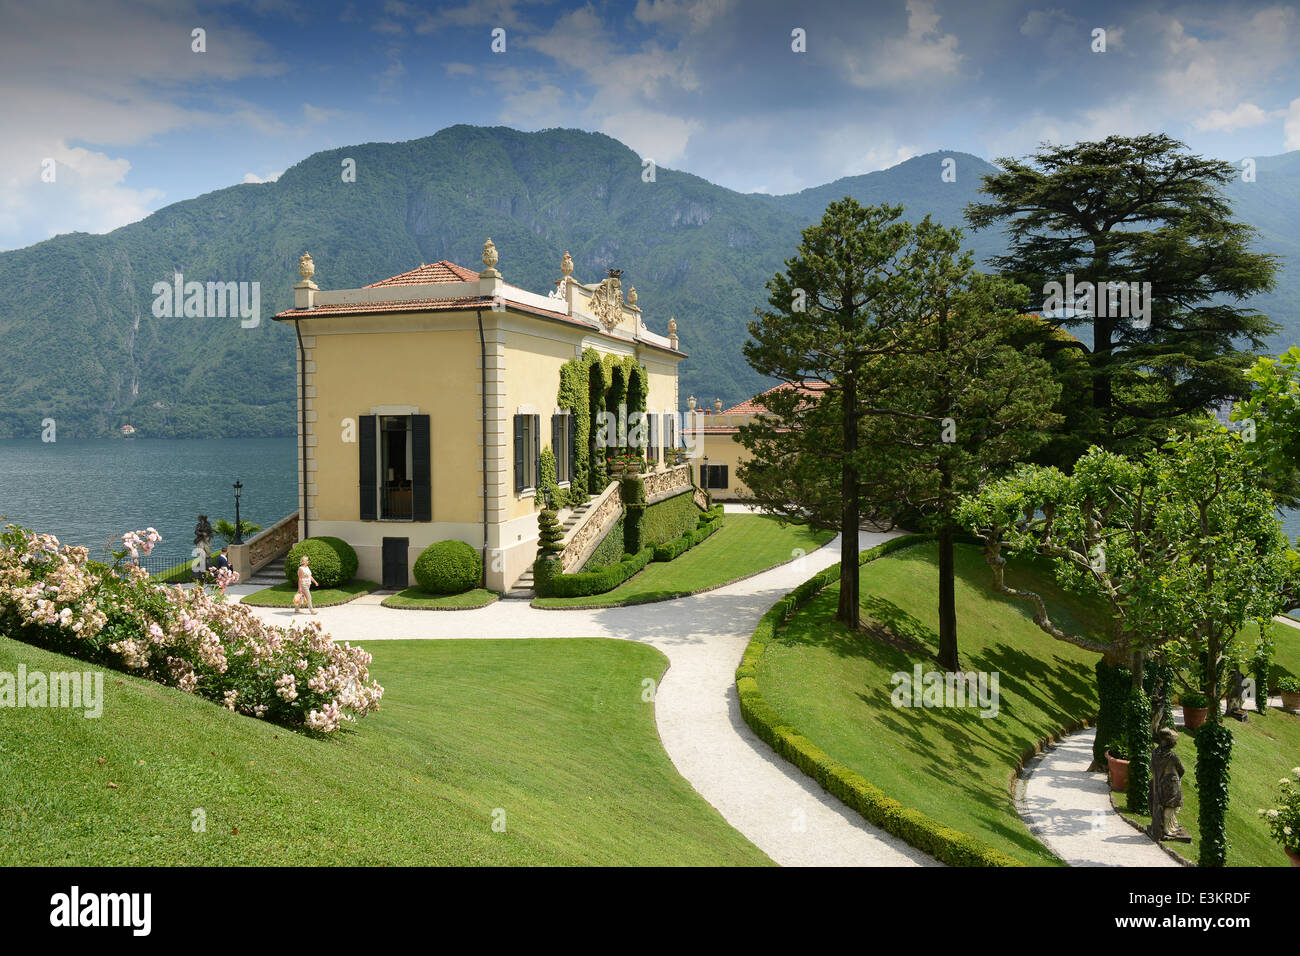 Villa Balbianello garden gardens, Lenno, Lake Como, Italy Stock Photo